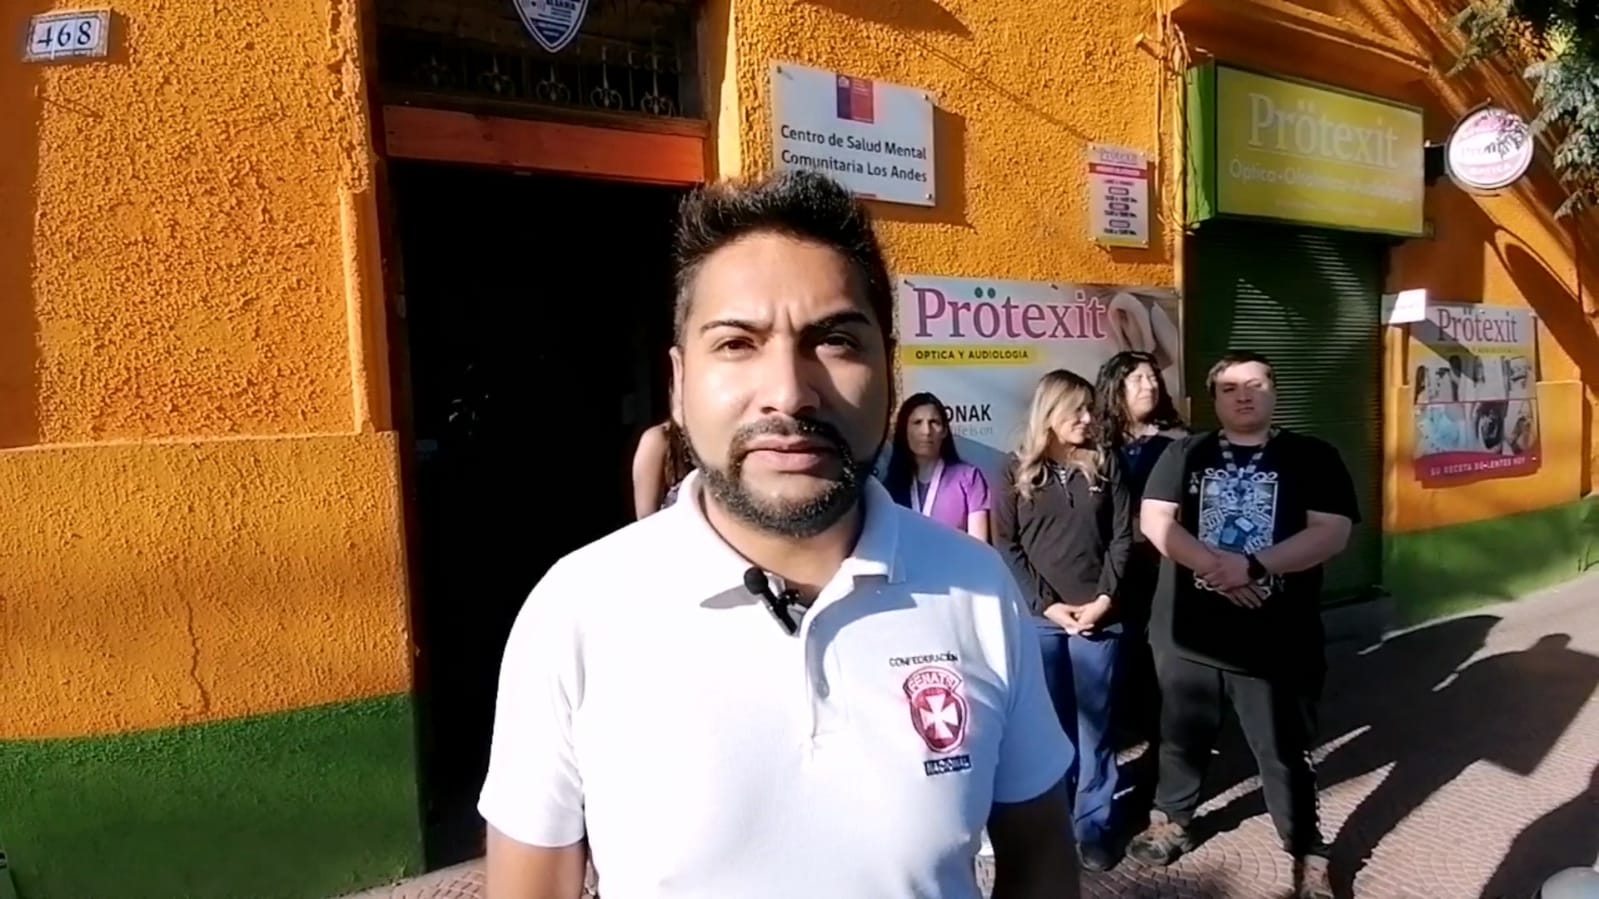 LOS ANDES: [VIDEO] Cosam Los Andes: Inician paro en equipos de salud mental Infando Juvenil